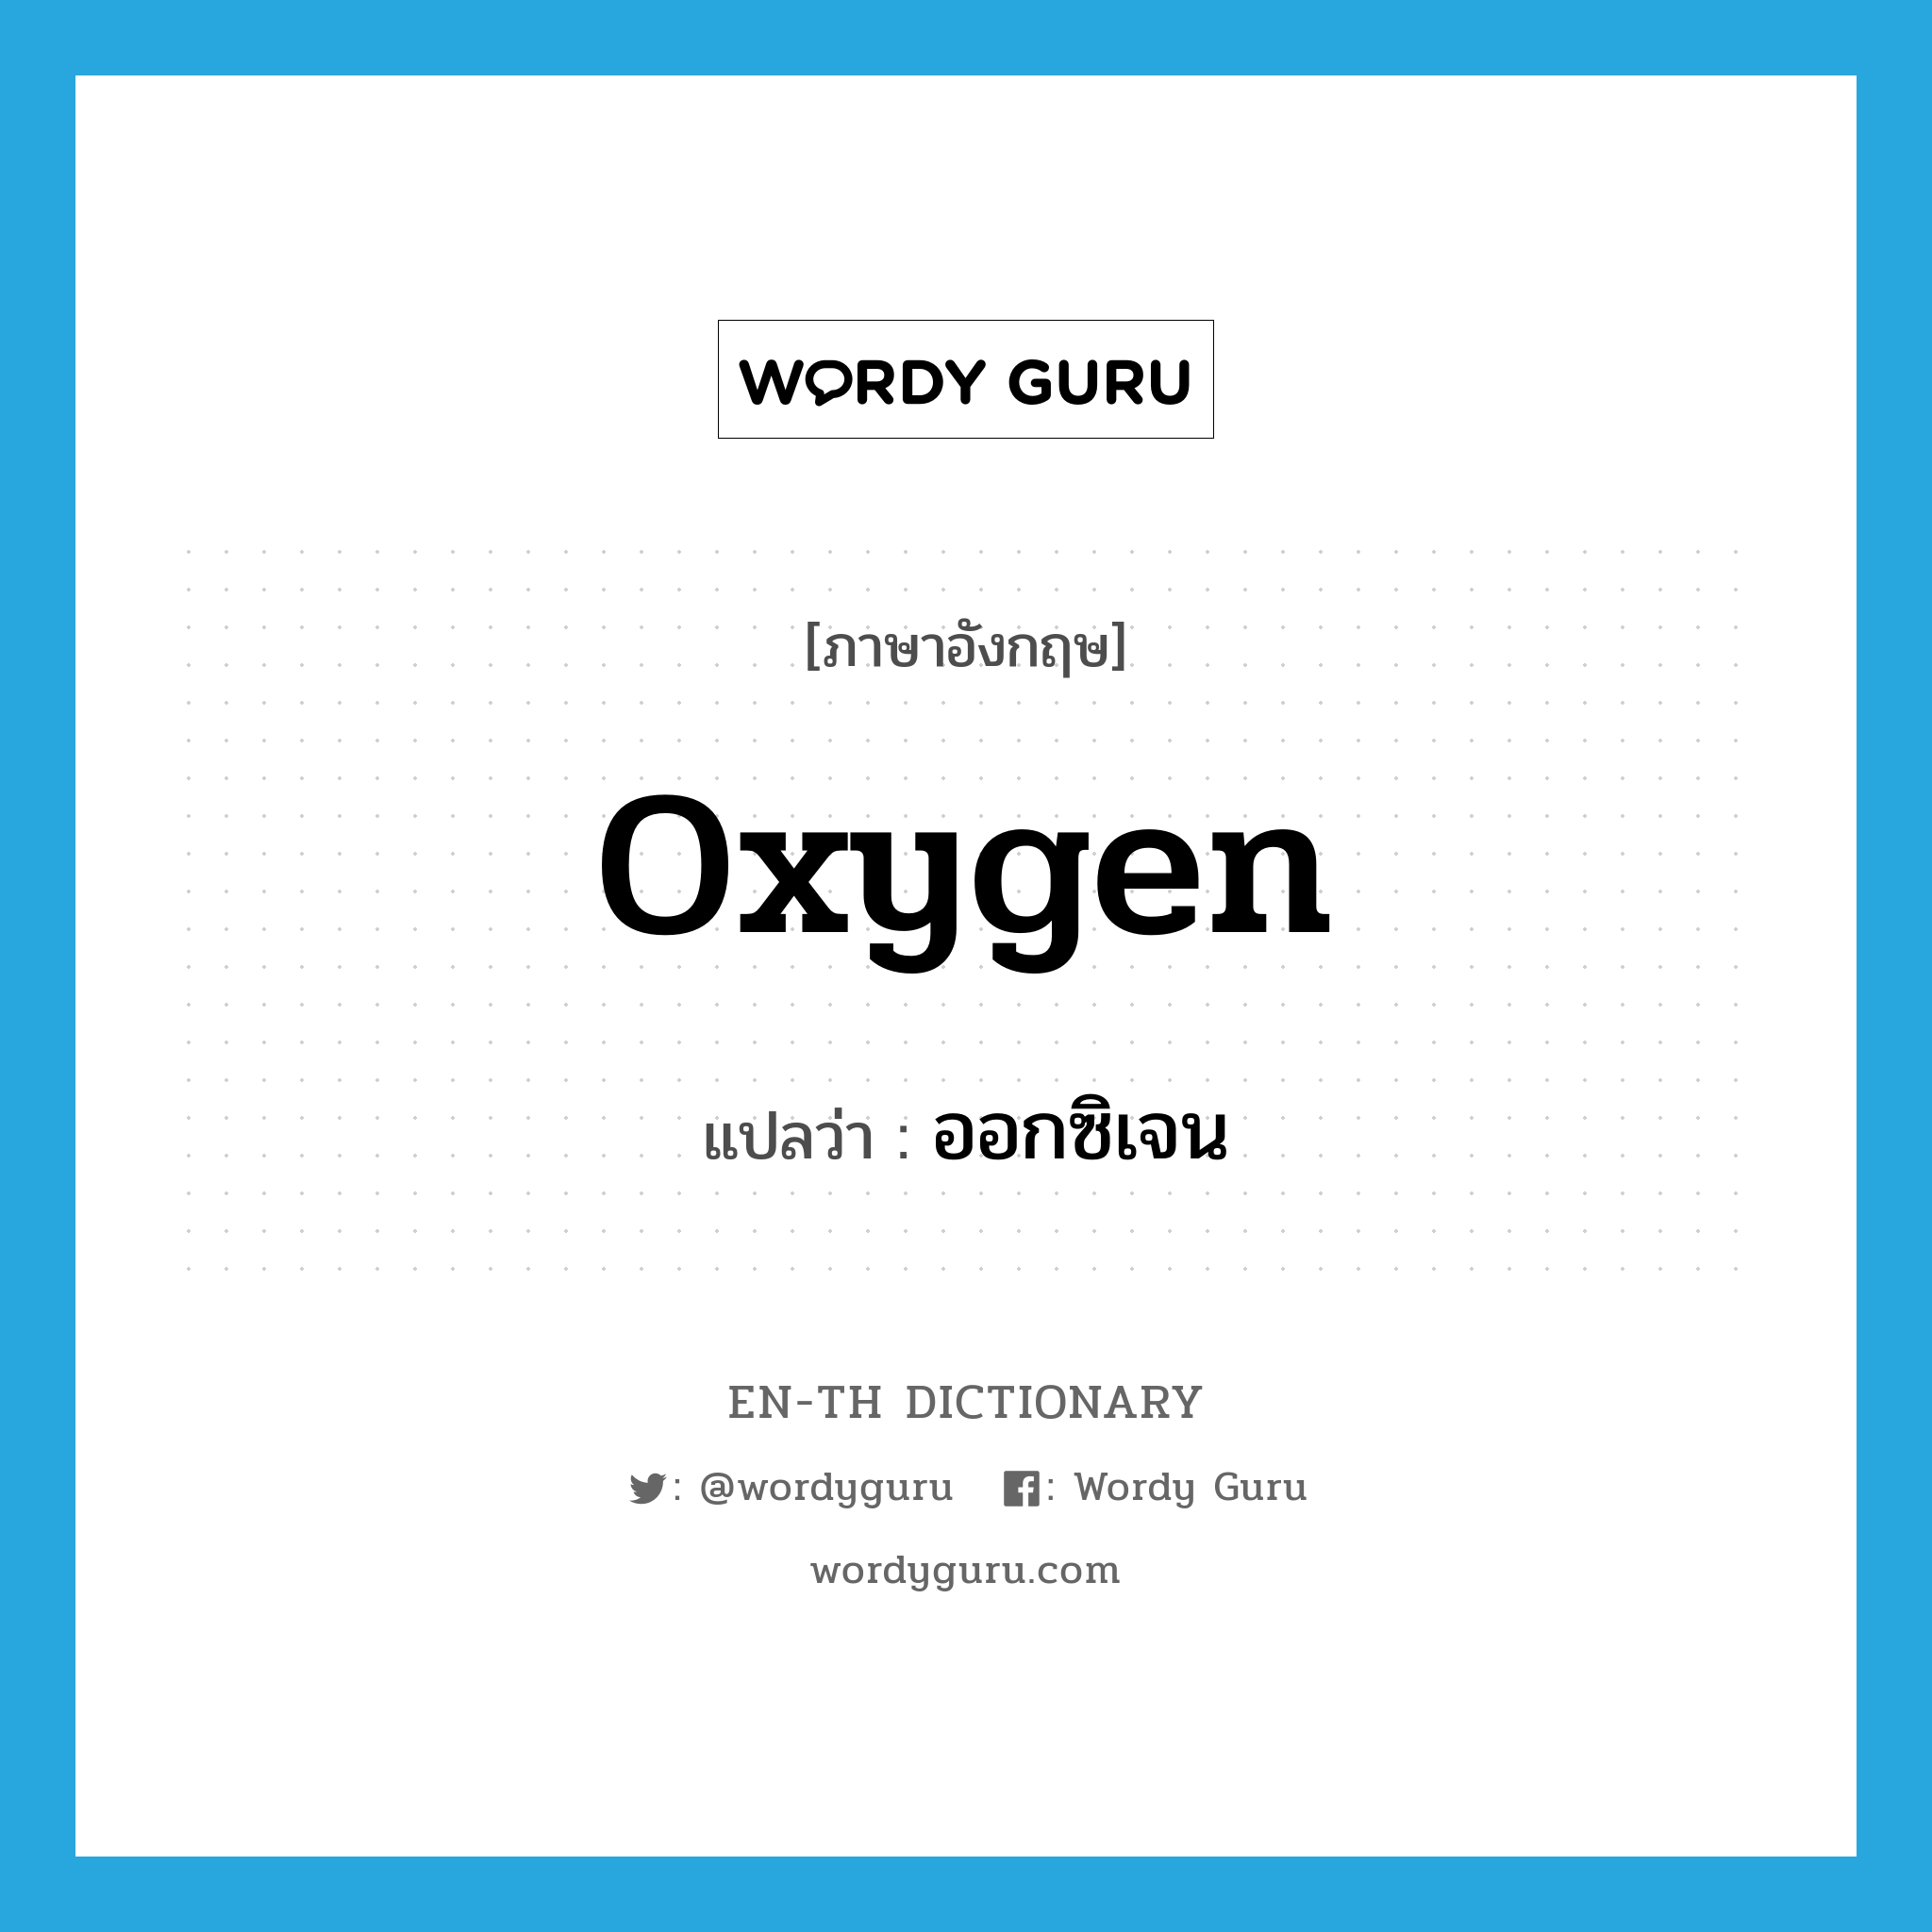 oxygen แปลว่า?, คำศัพท์ภาษาอังกฤษ oxygen แปลว่า ออกซิเจน ประเภท N หมวด N